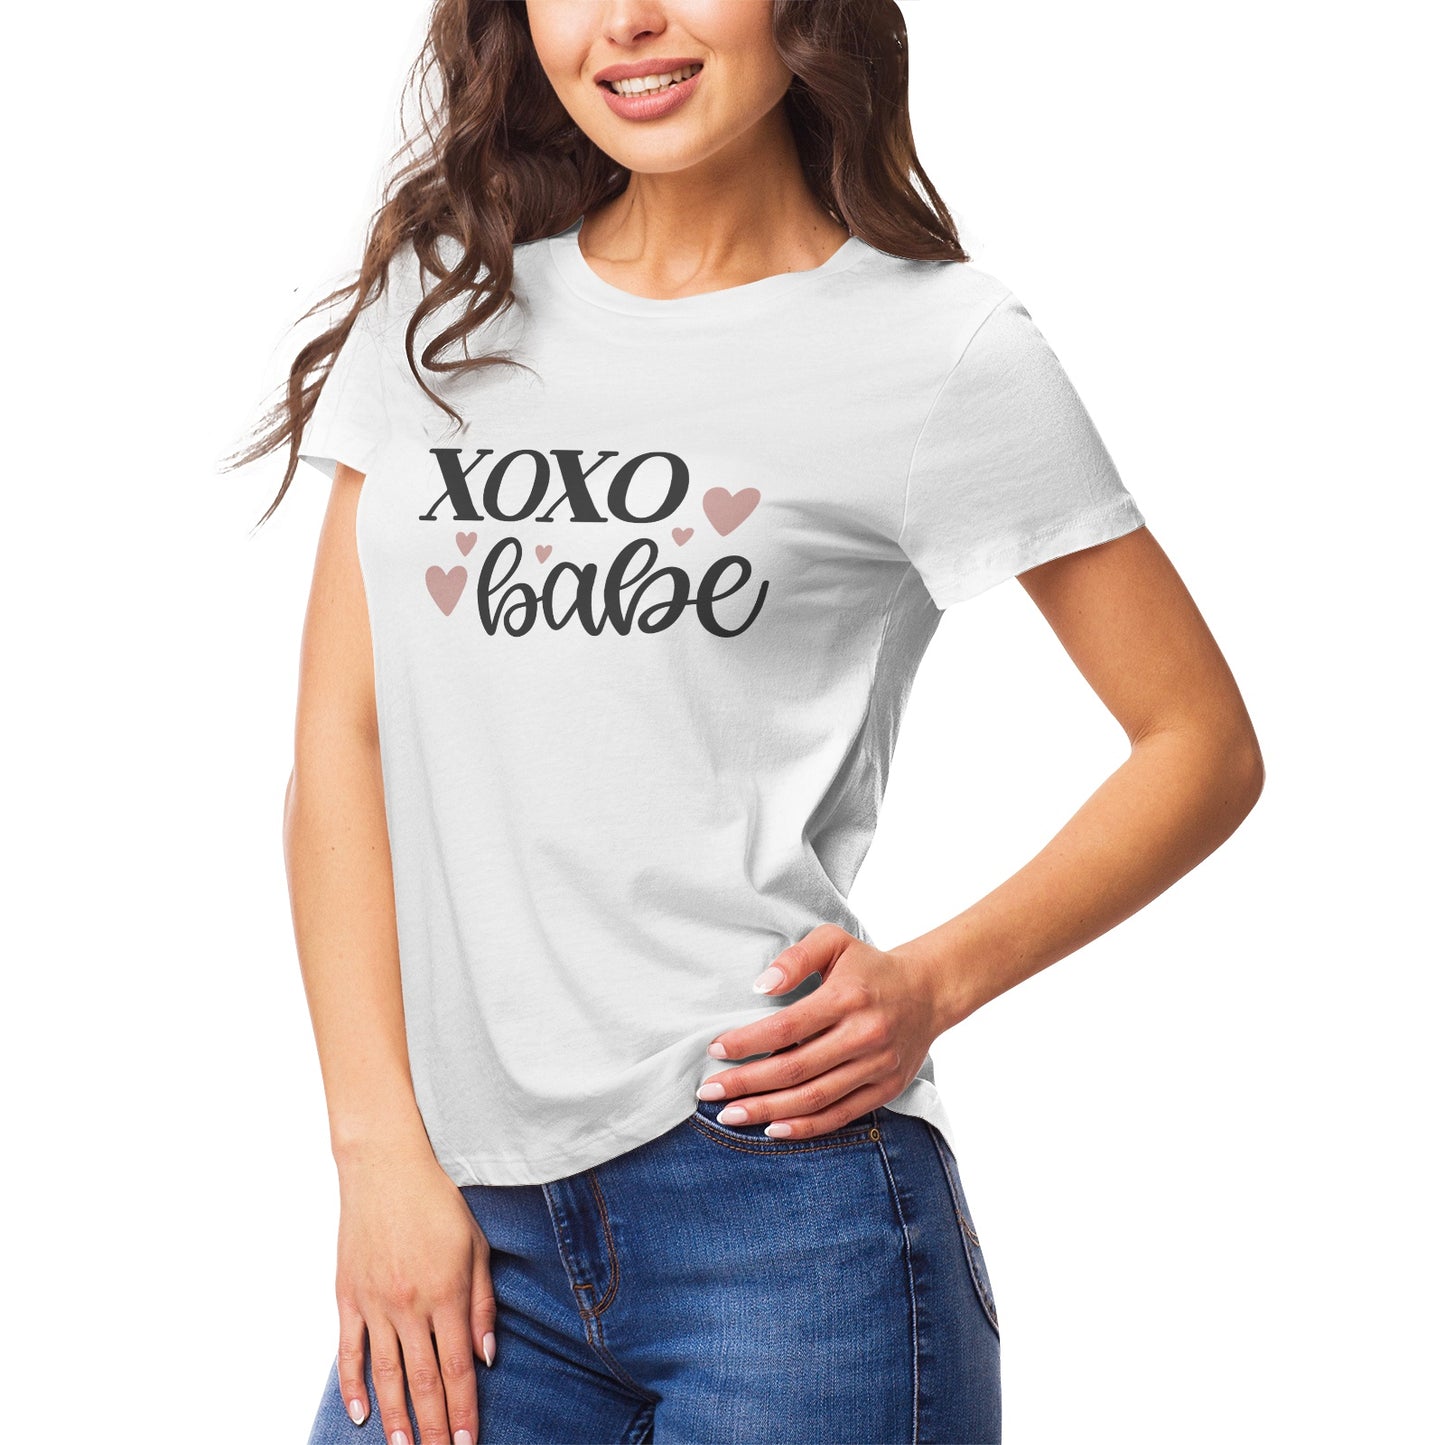 Fantasy 10 Women's Ultrasoft Pima Cotton T‑shirt - DromedarShop.com Online Boutique